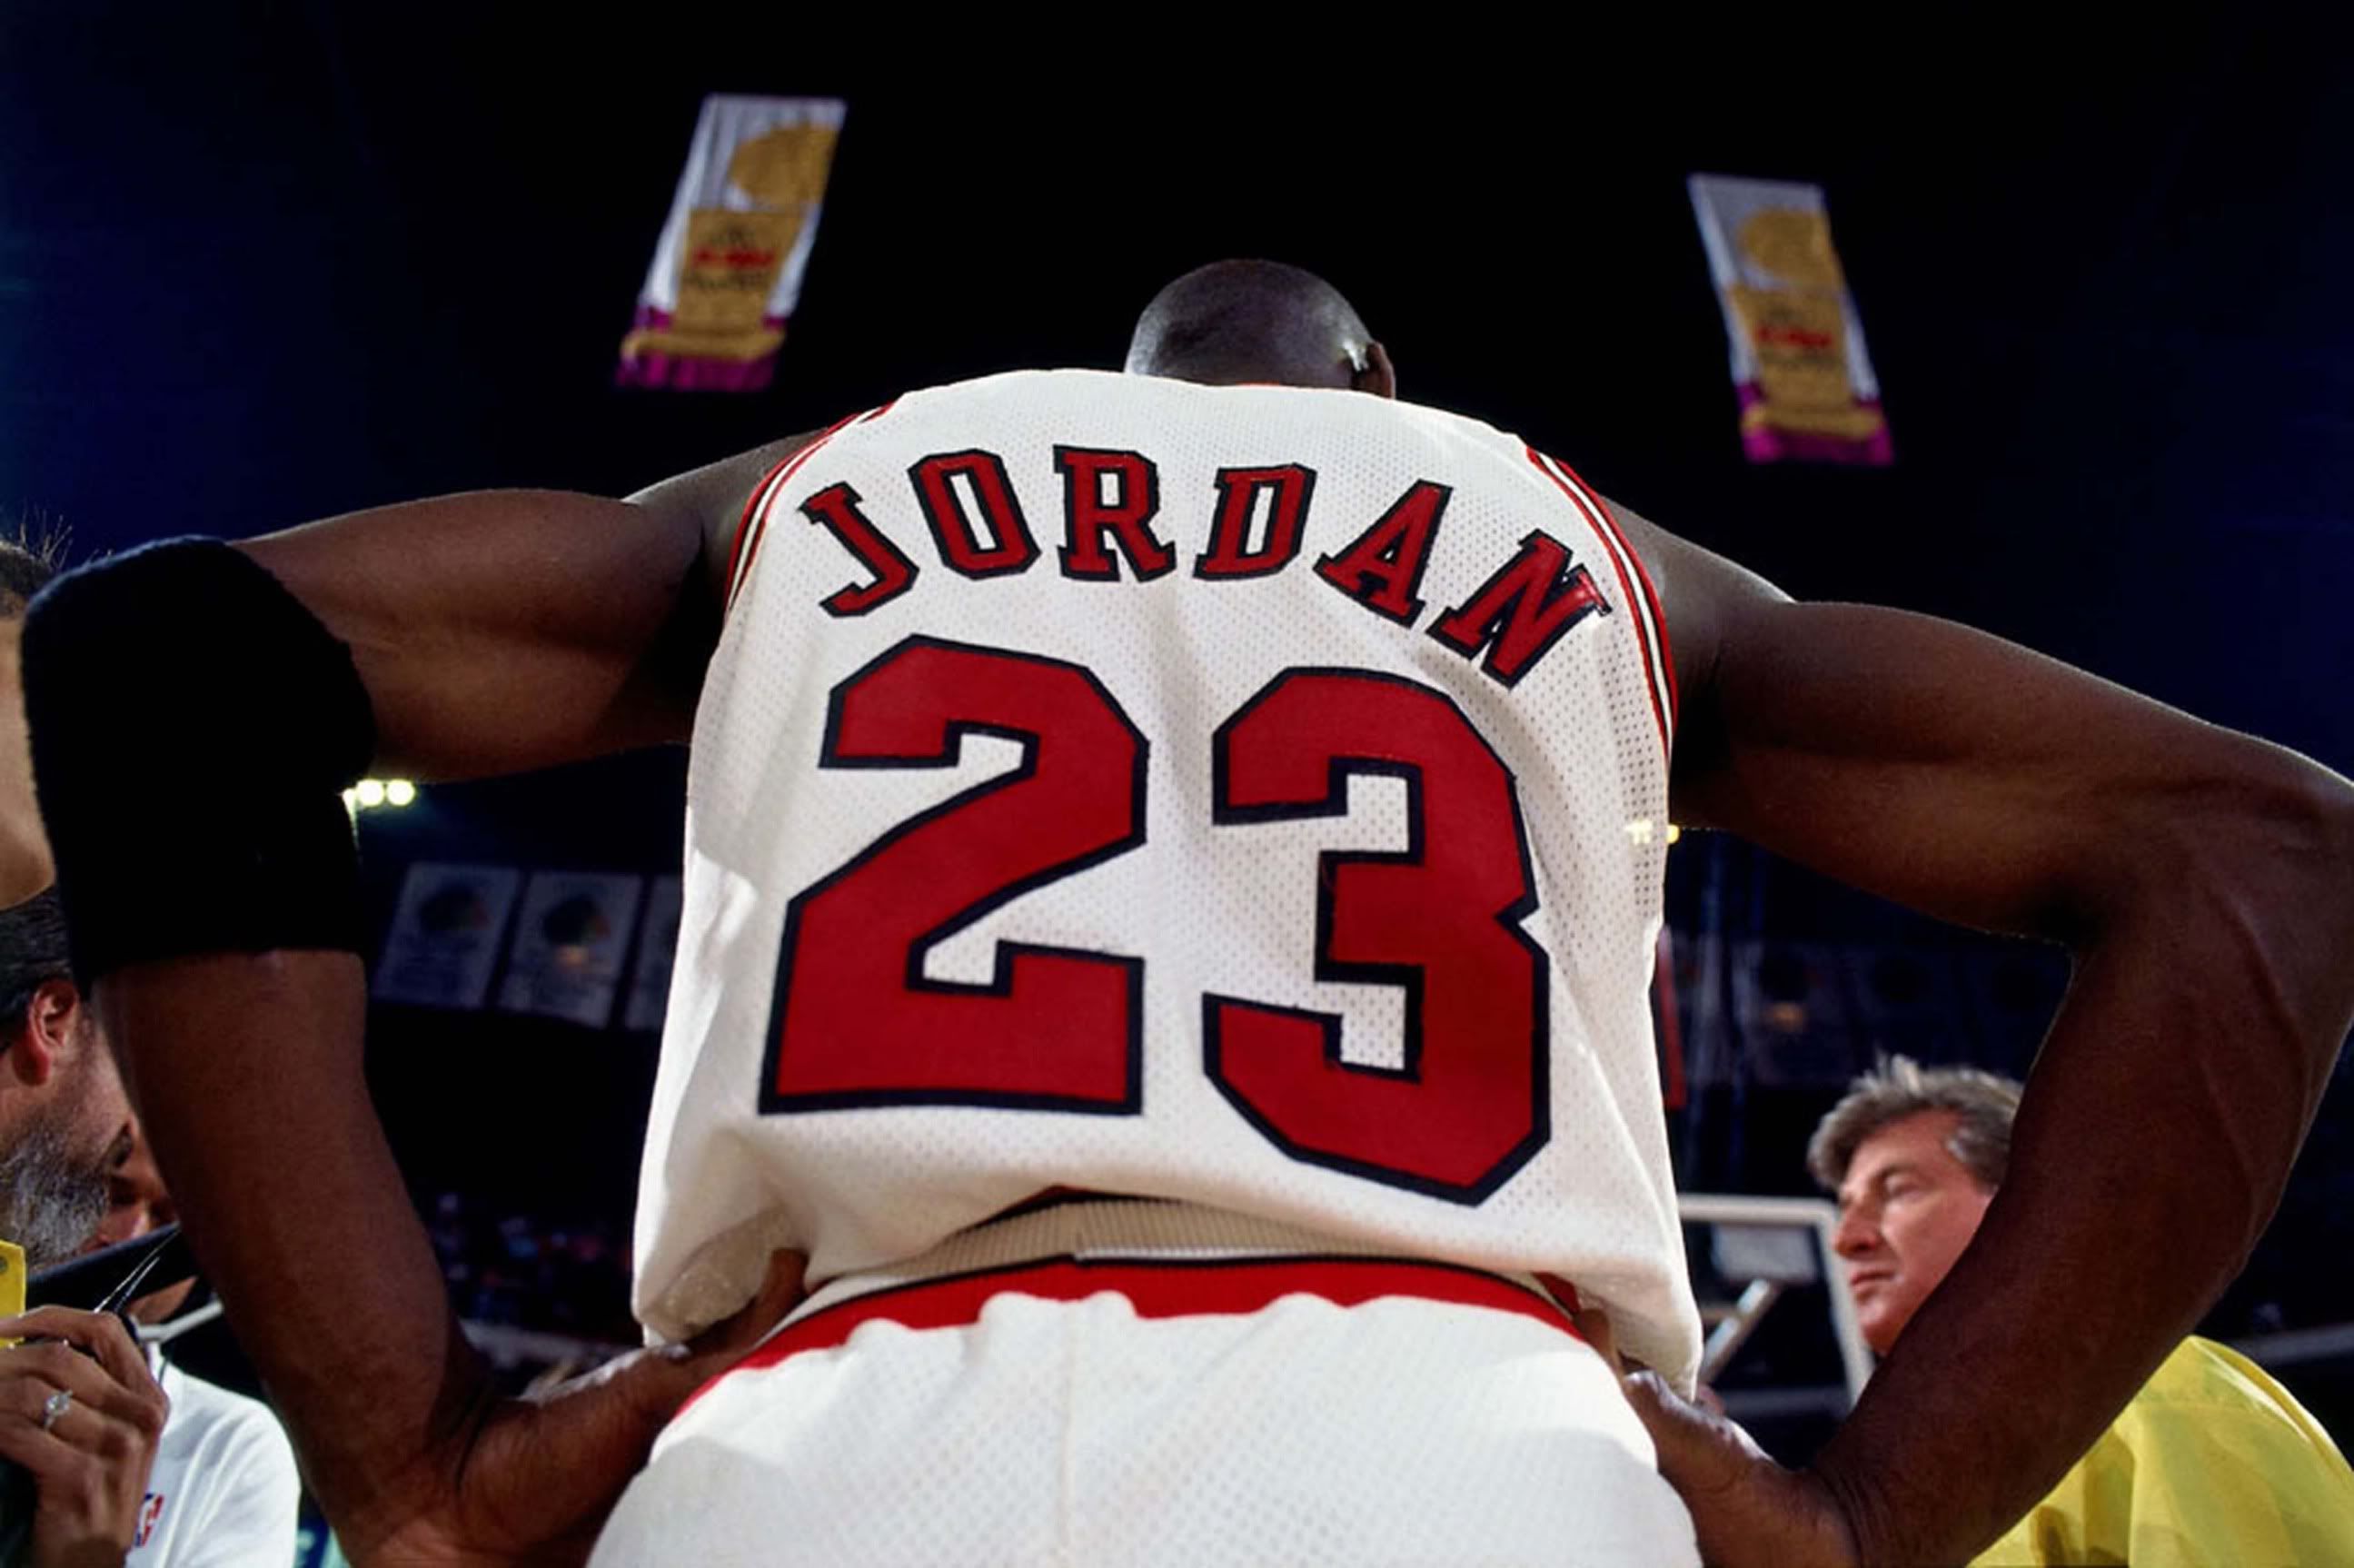 Jordan 23 wallpaper